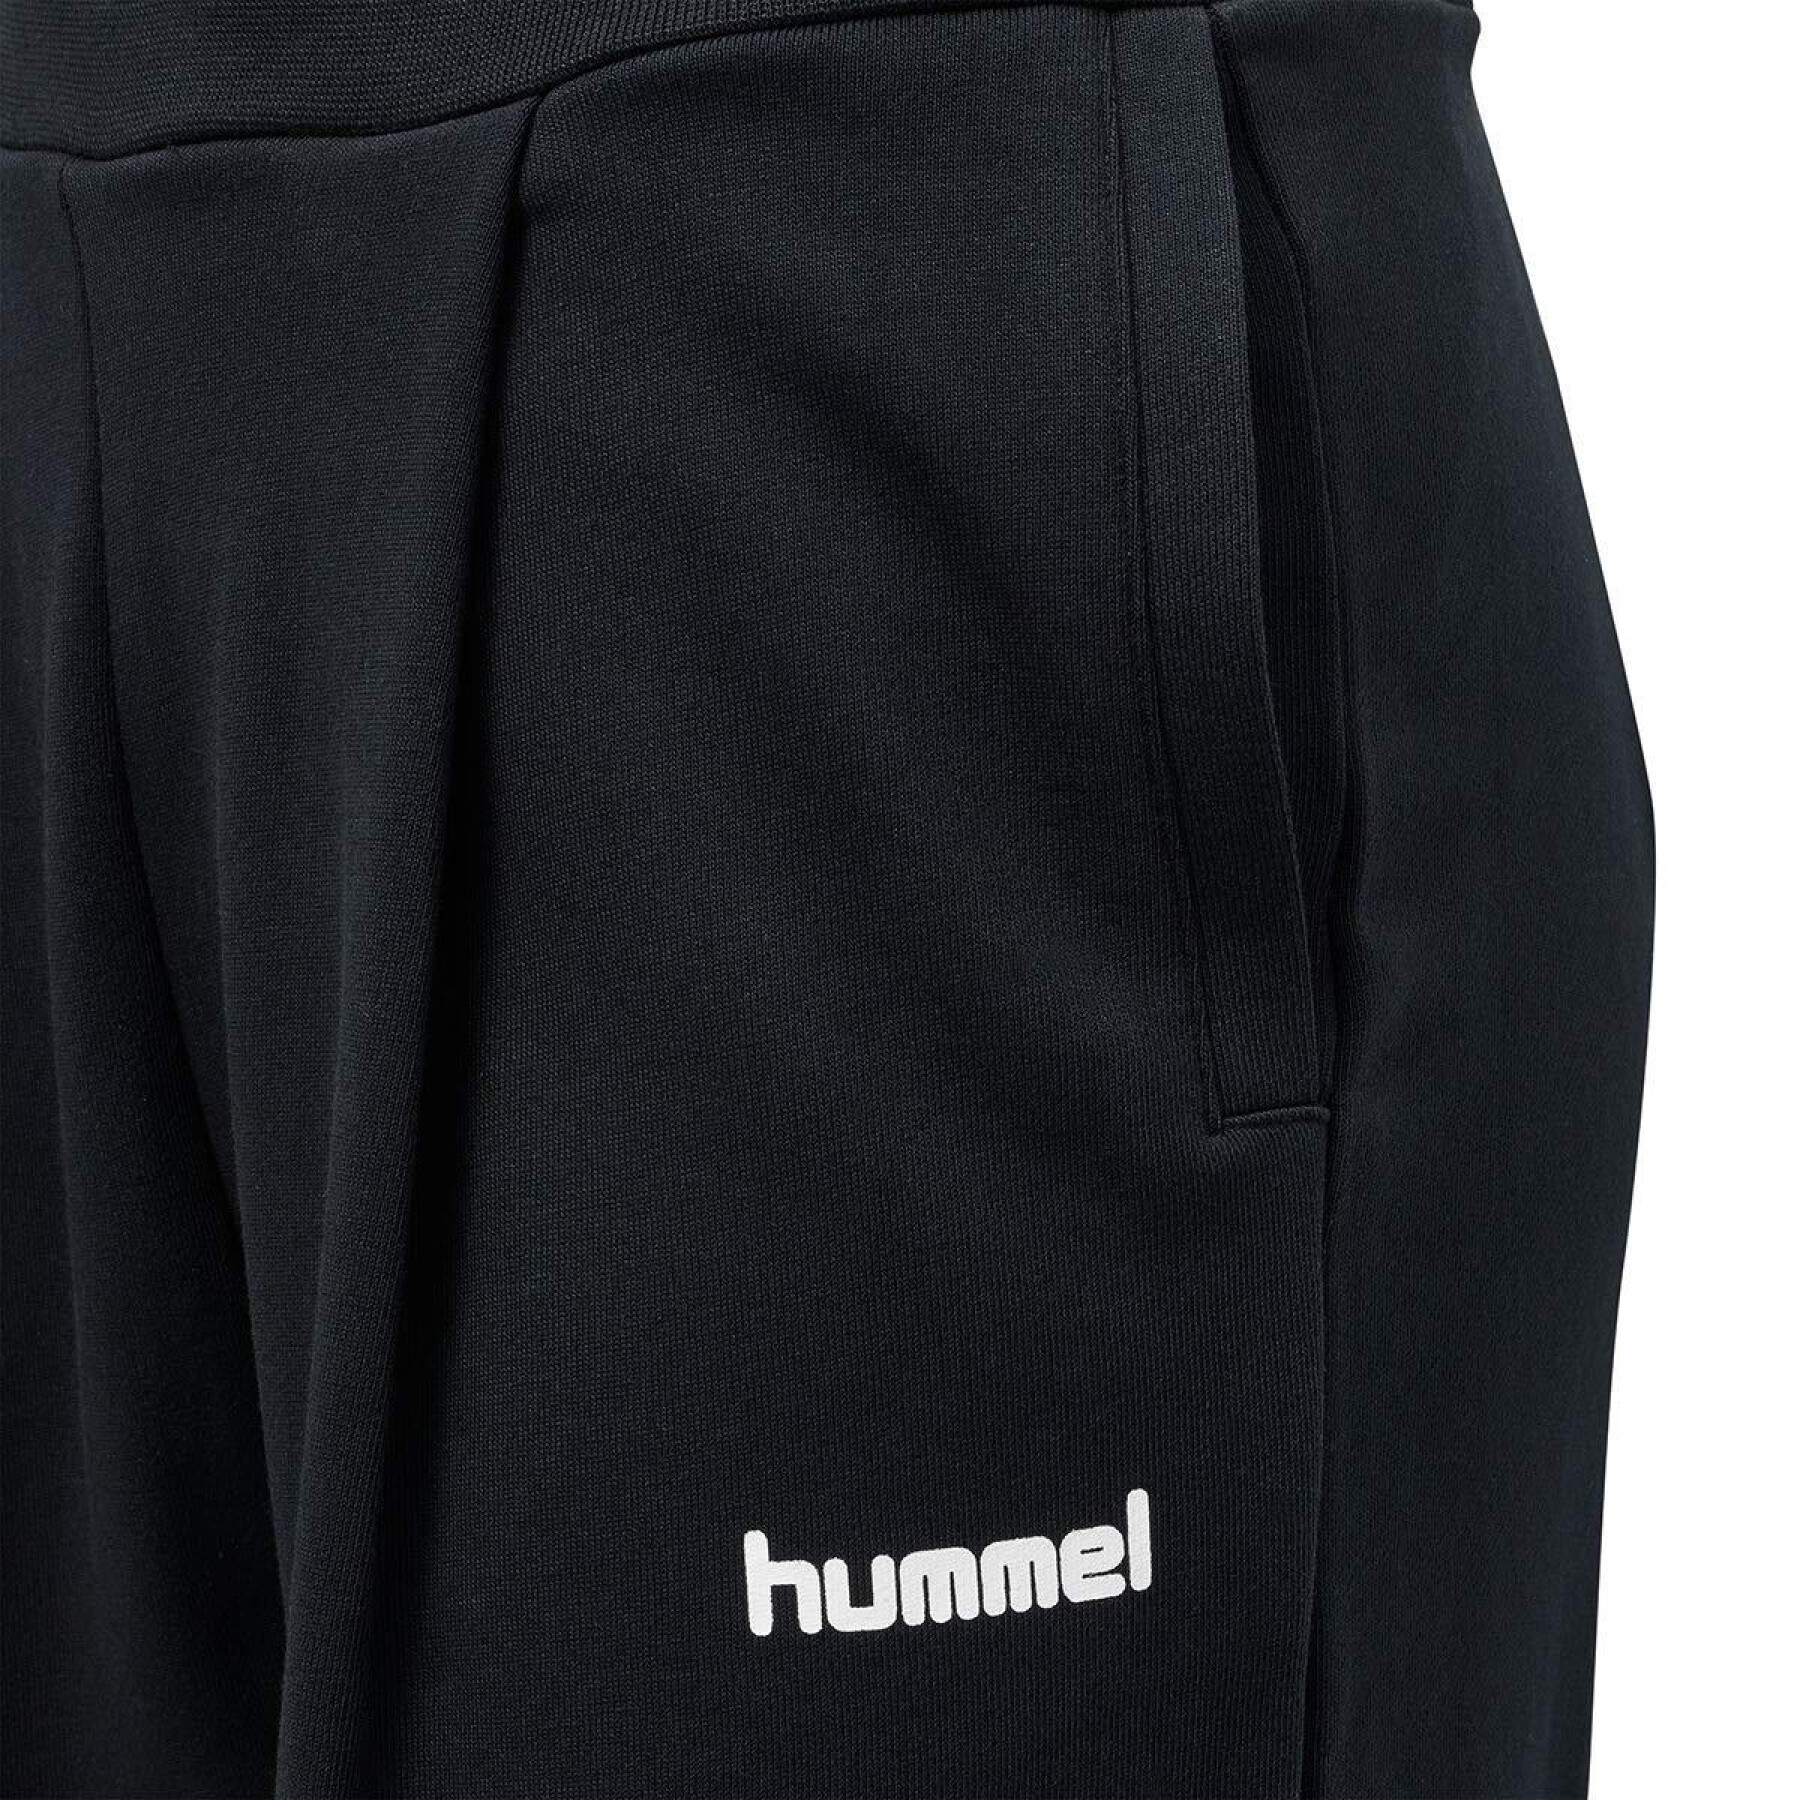 Pantalon femme Hummel hmlcrissy